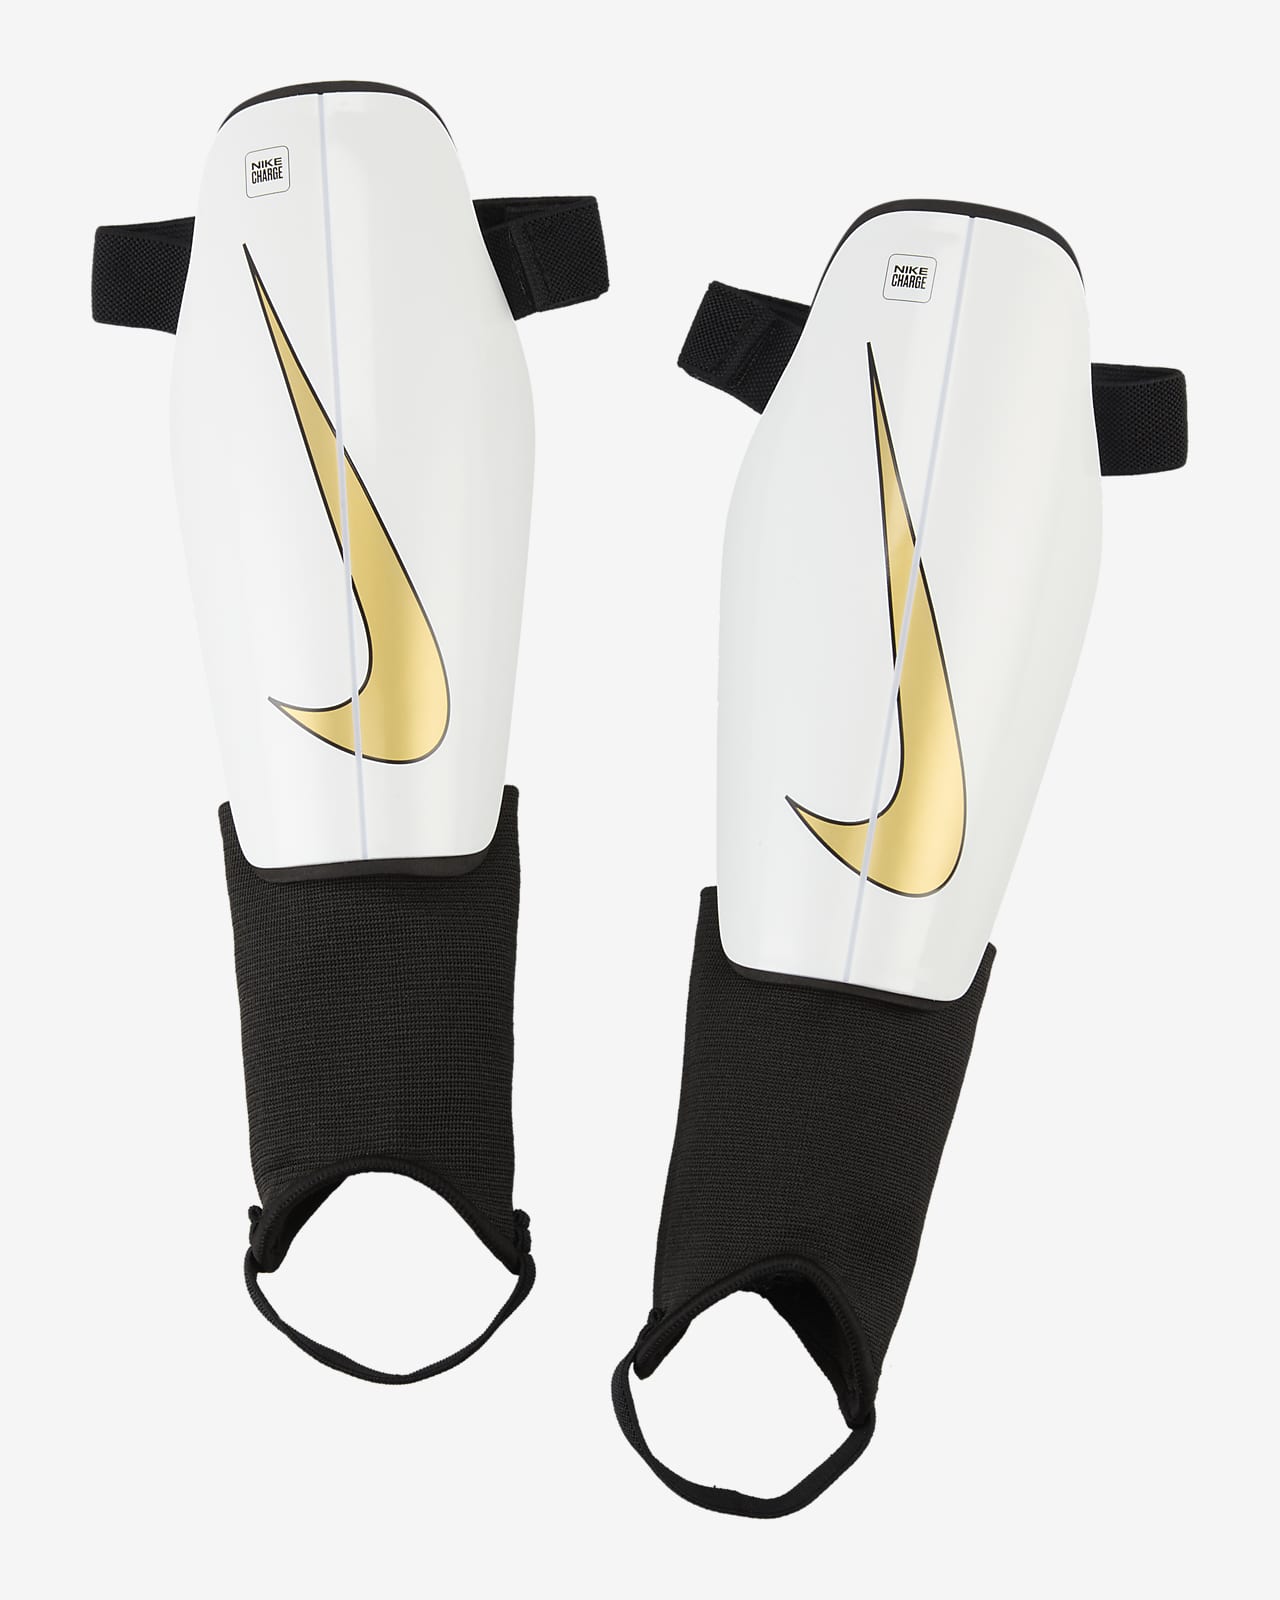 Nike Charge futball-lábszárvédő